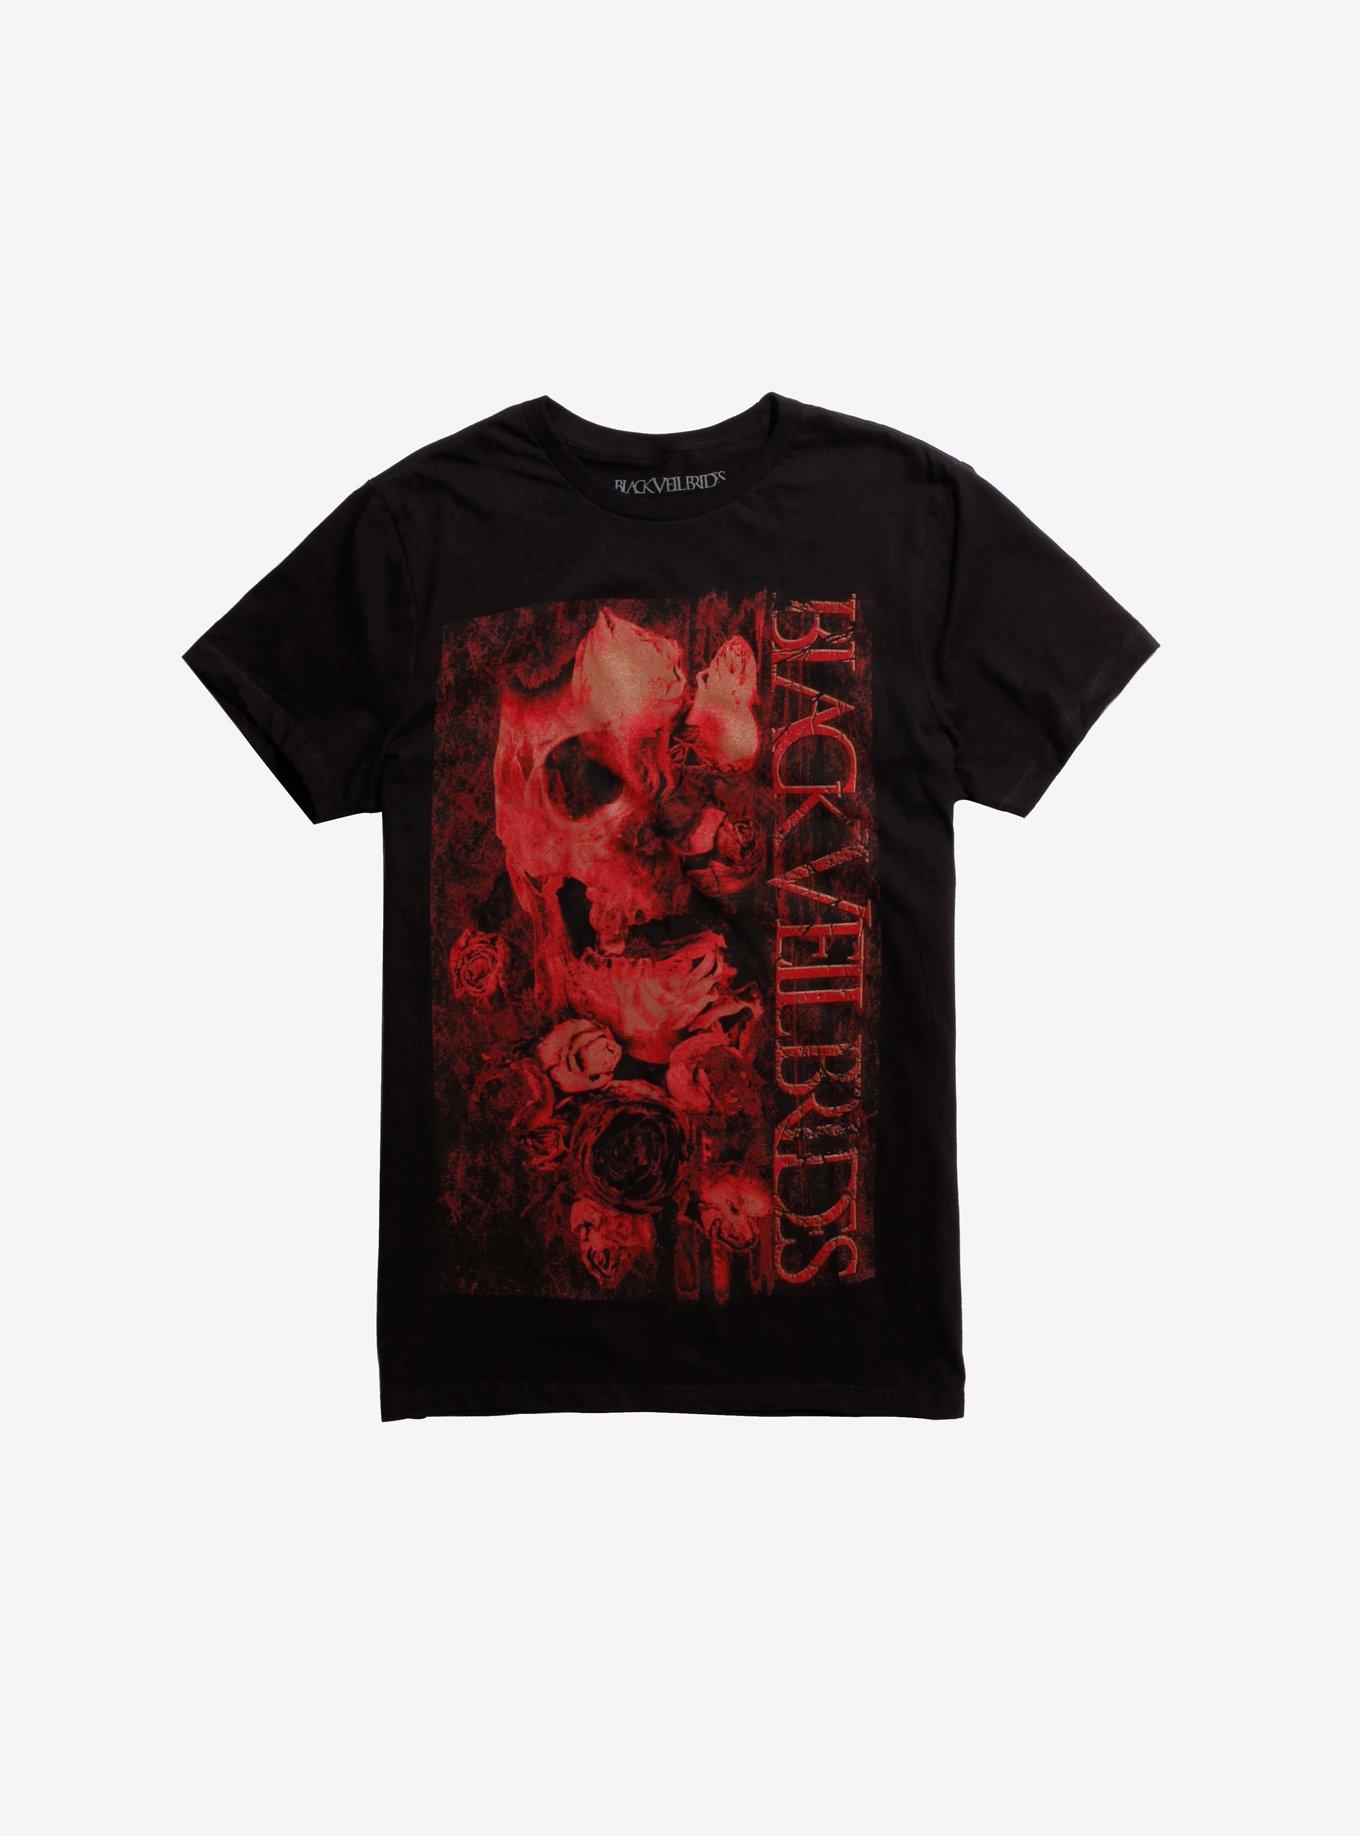 Black Veil Brides Skull & Roses T-Shirt, BLACK, hi-res